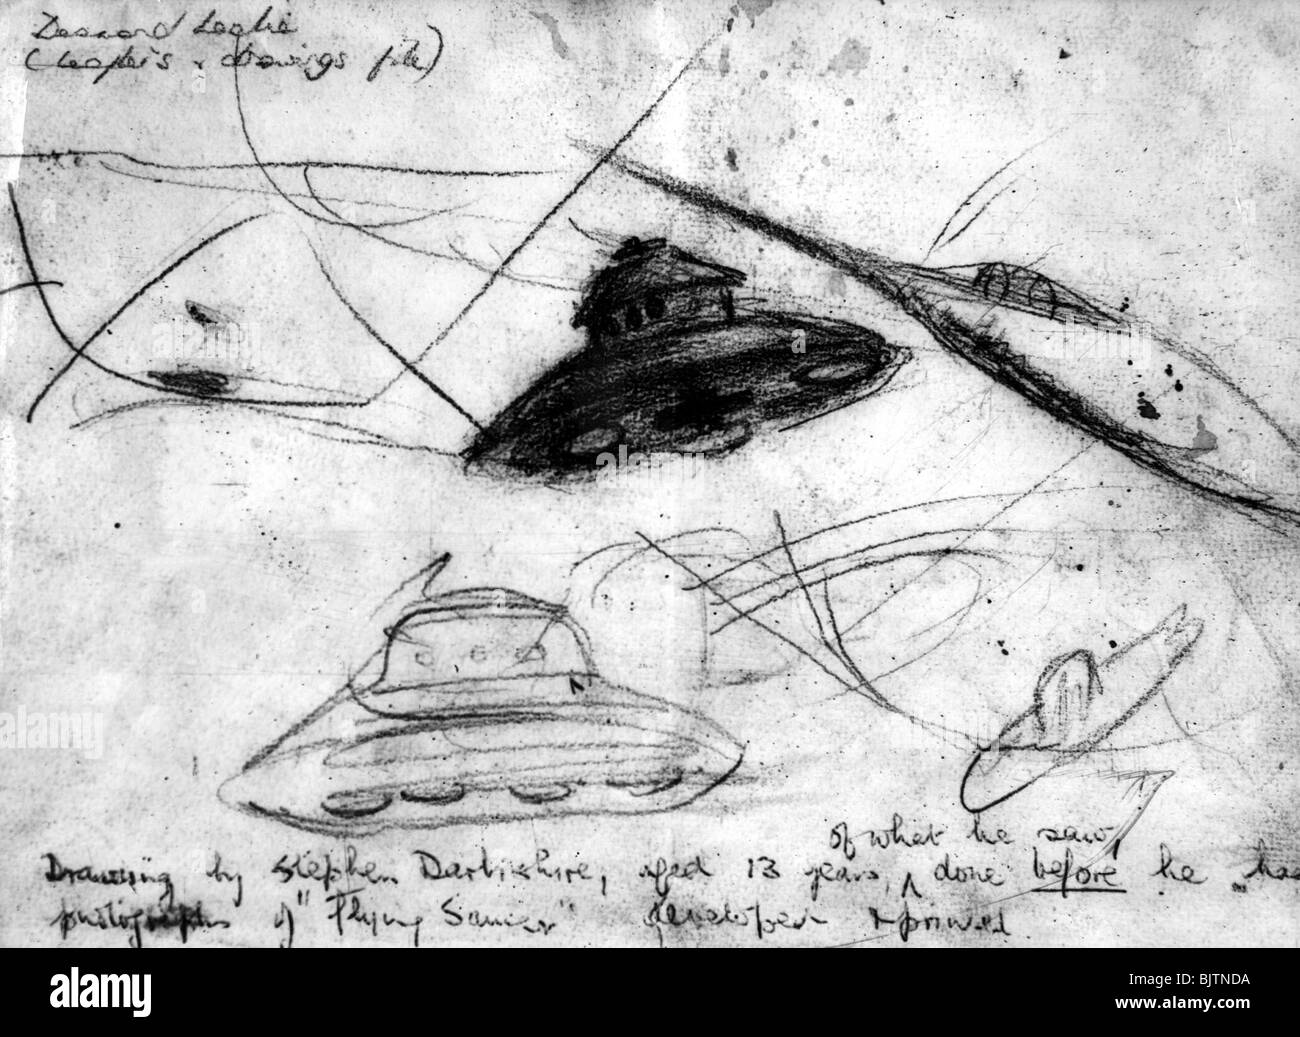 Astronautica, oggetto volante non identificato (UFO), ufo, volare, schizzi di Stephen Darbishire, prima che egli sviluppò il film, febbraio 1954, Foto Stock